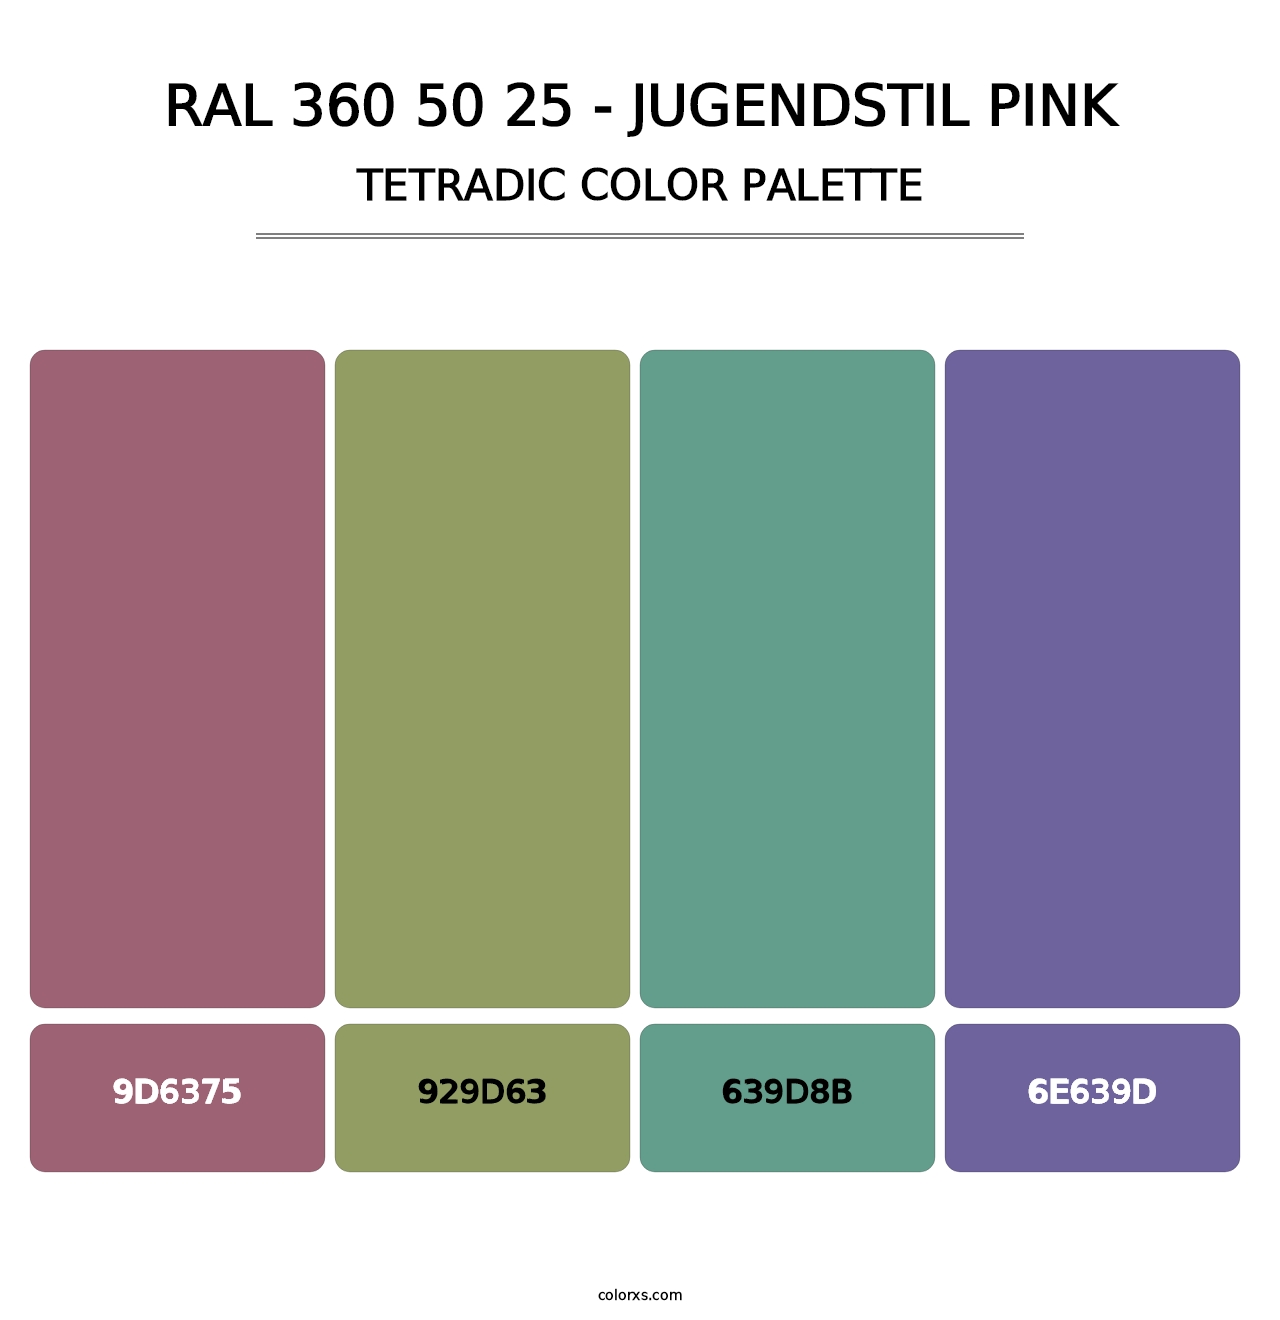 RAL 360 50 25 - Jugendstil Pink - Tetradic Color Palette